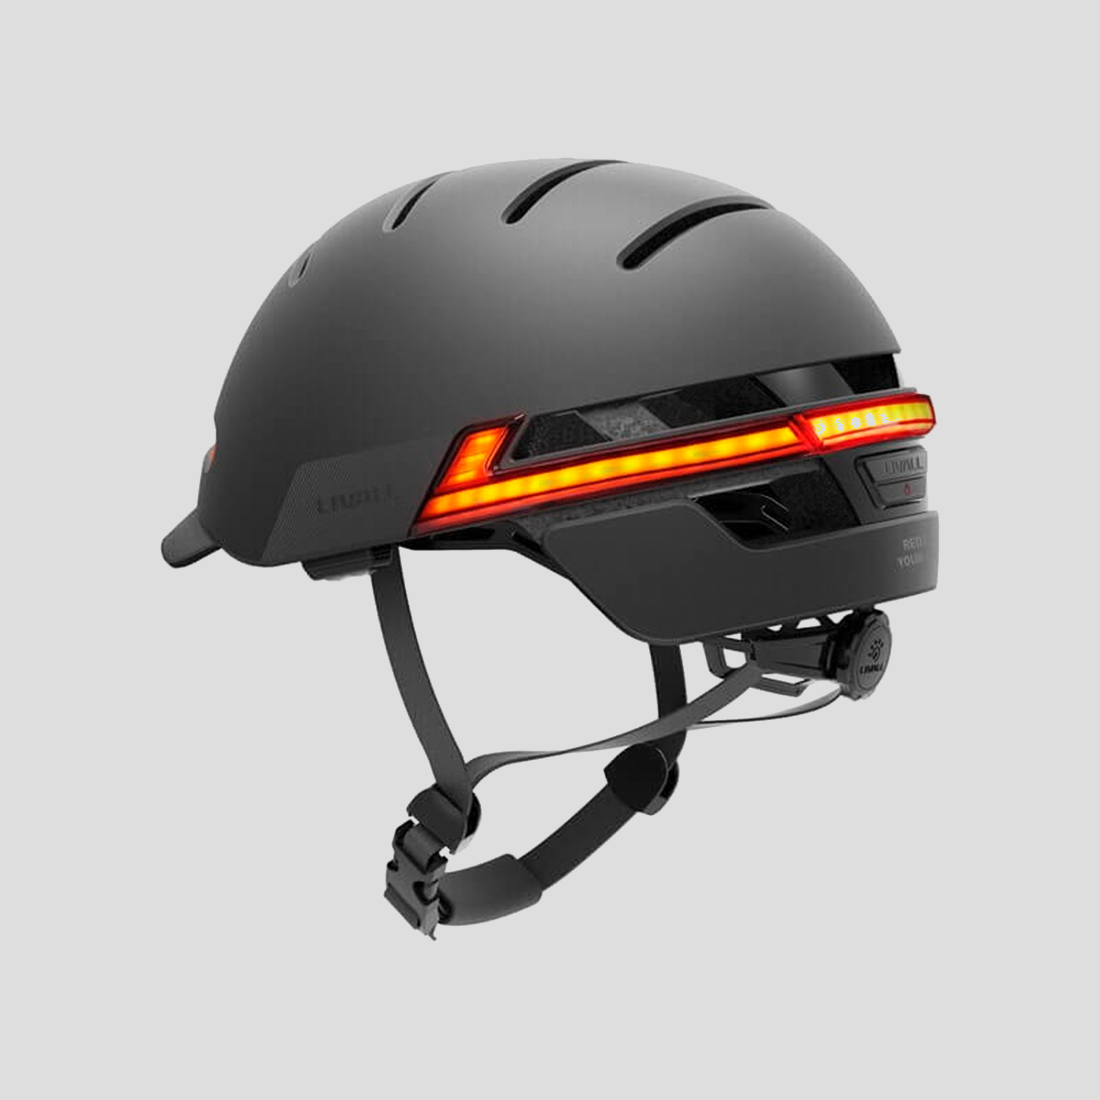 El casco que se ilumina cuando el ciclista frena